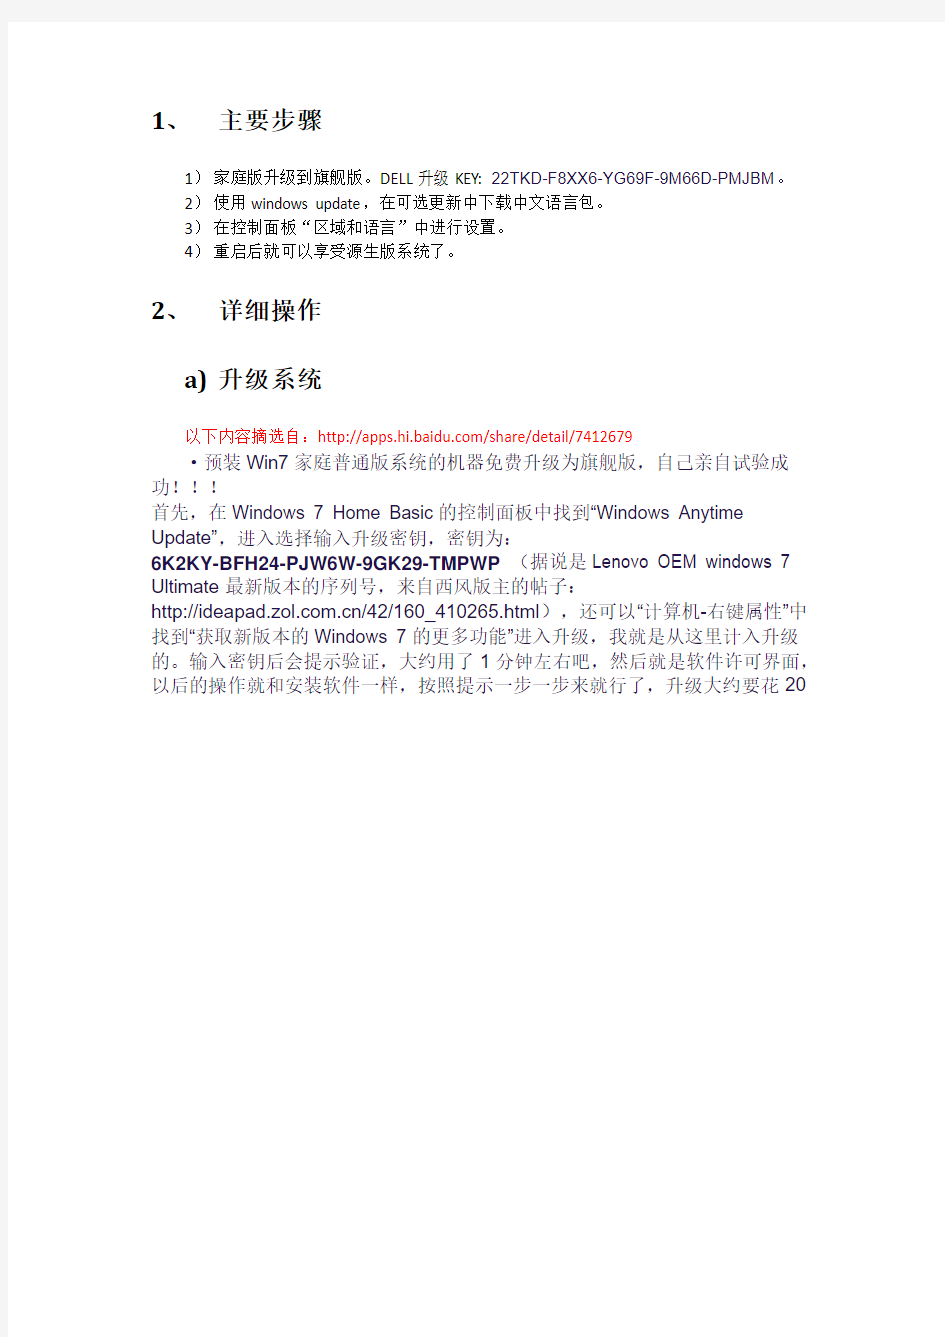 原装英文WIN7家庭版系统转化中文办法